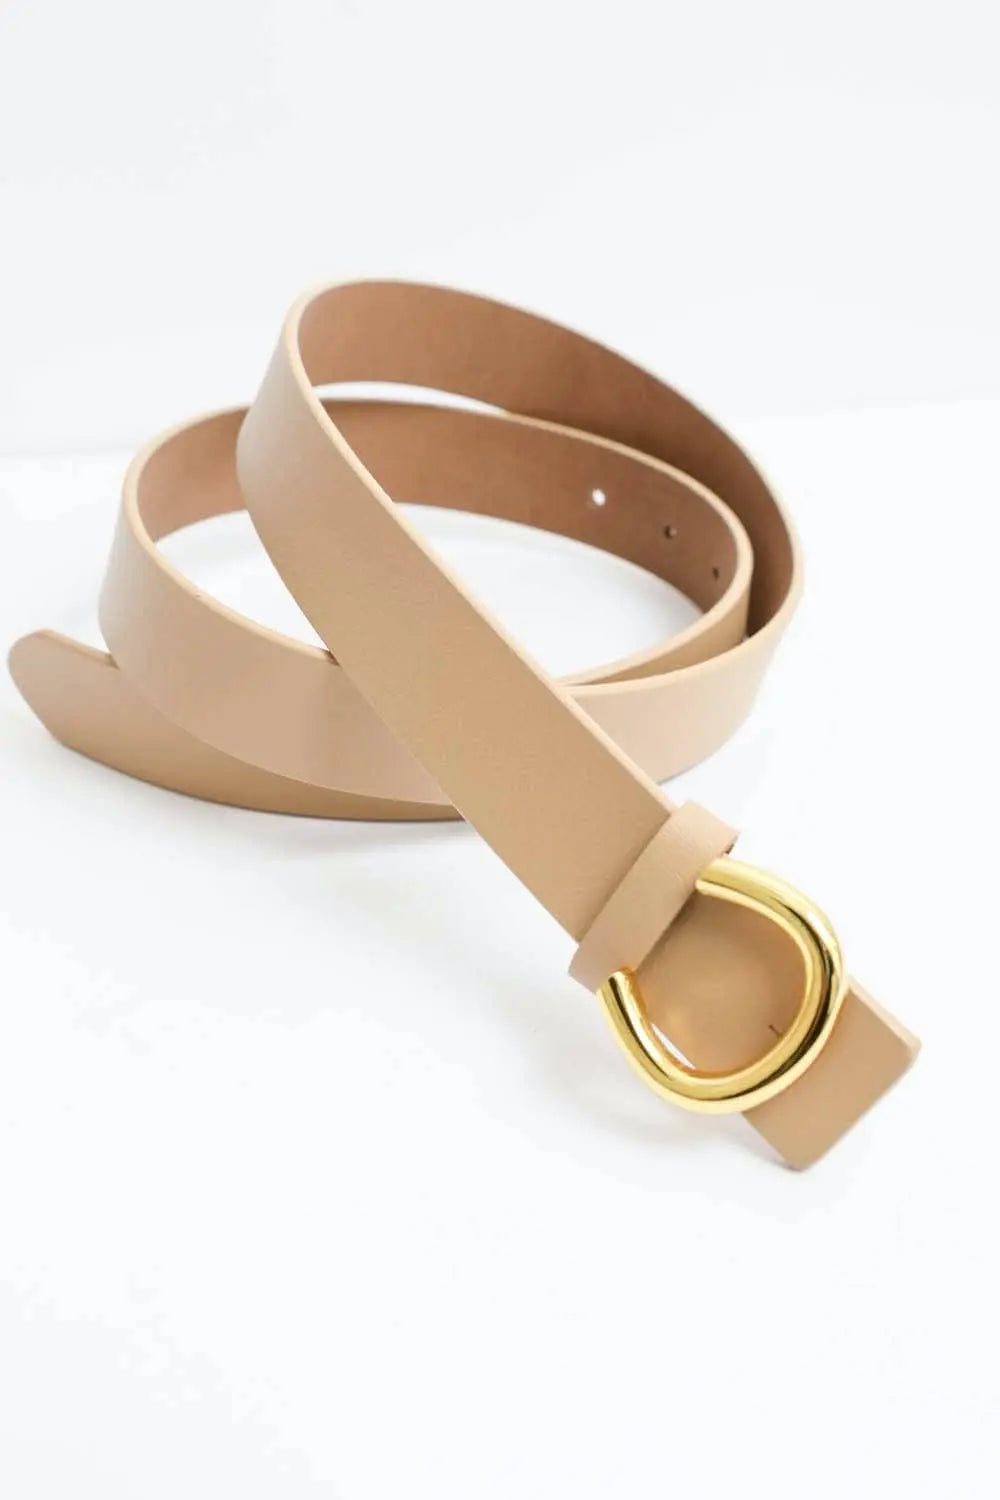 Beige Minimalist Gold Horseshoe Leather Belt | Tiny Details – The Tiny ...